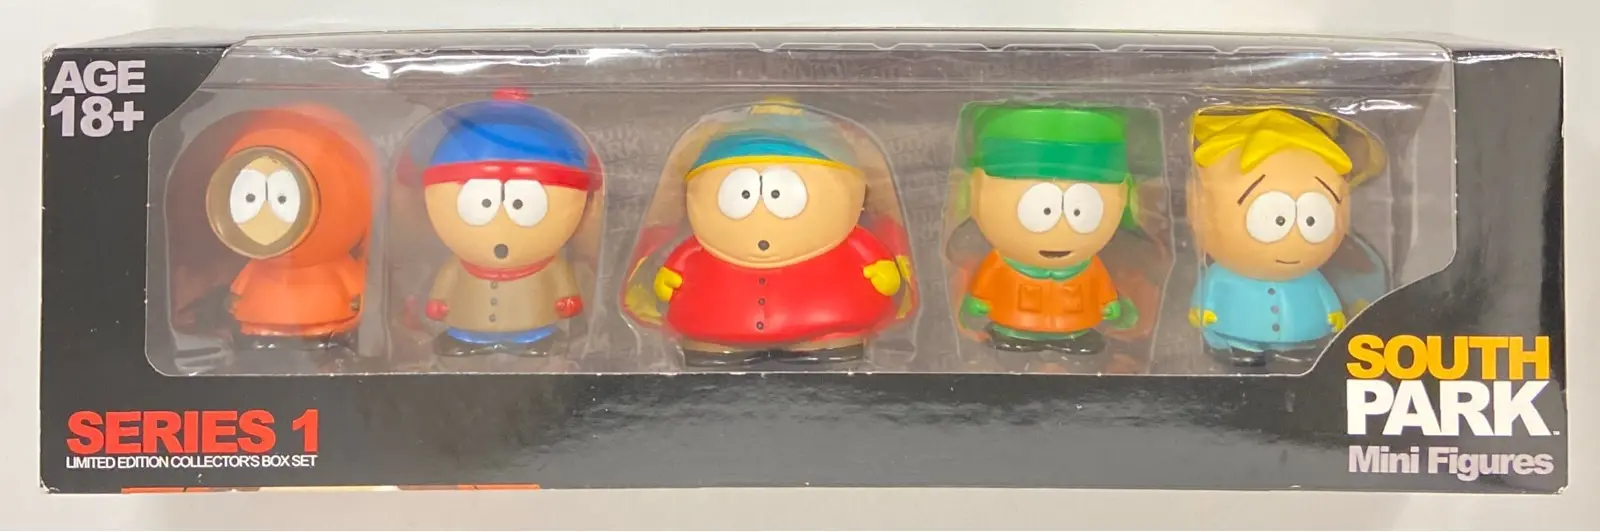 Figure - South Park